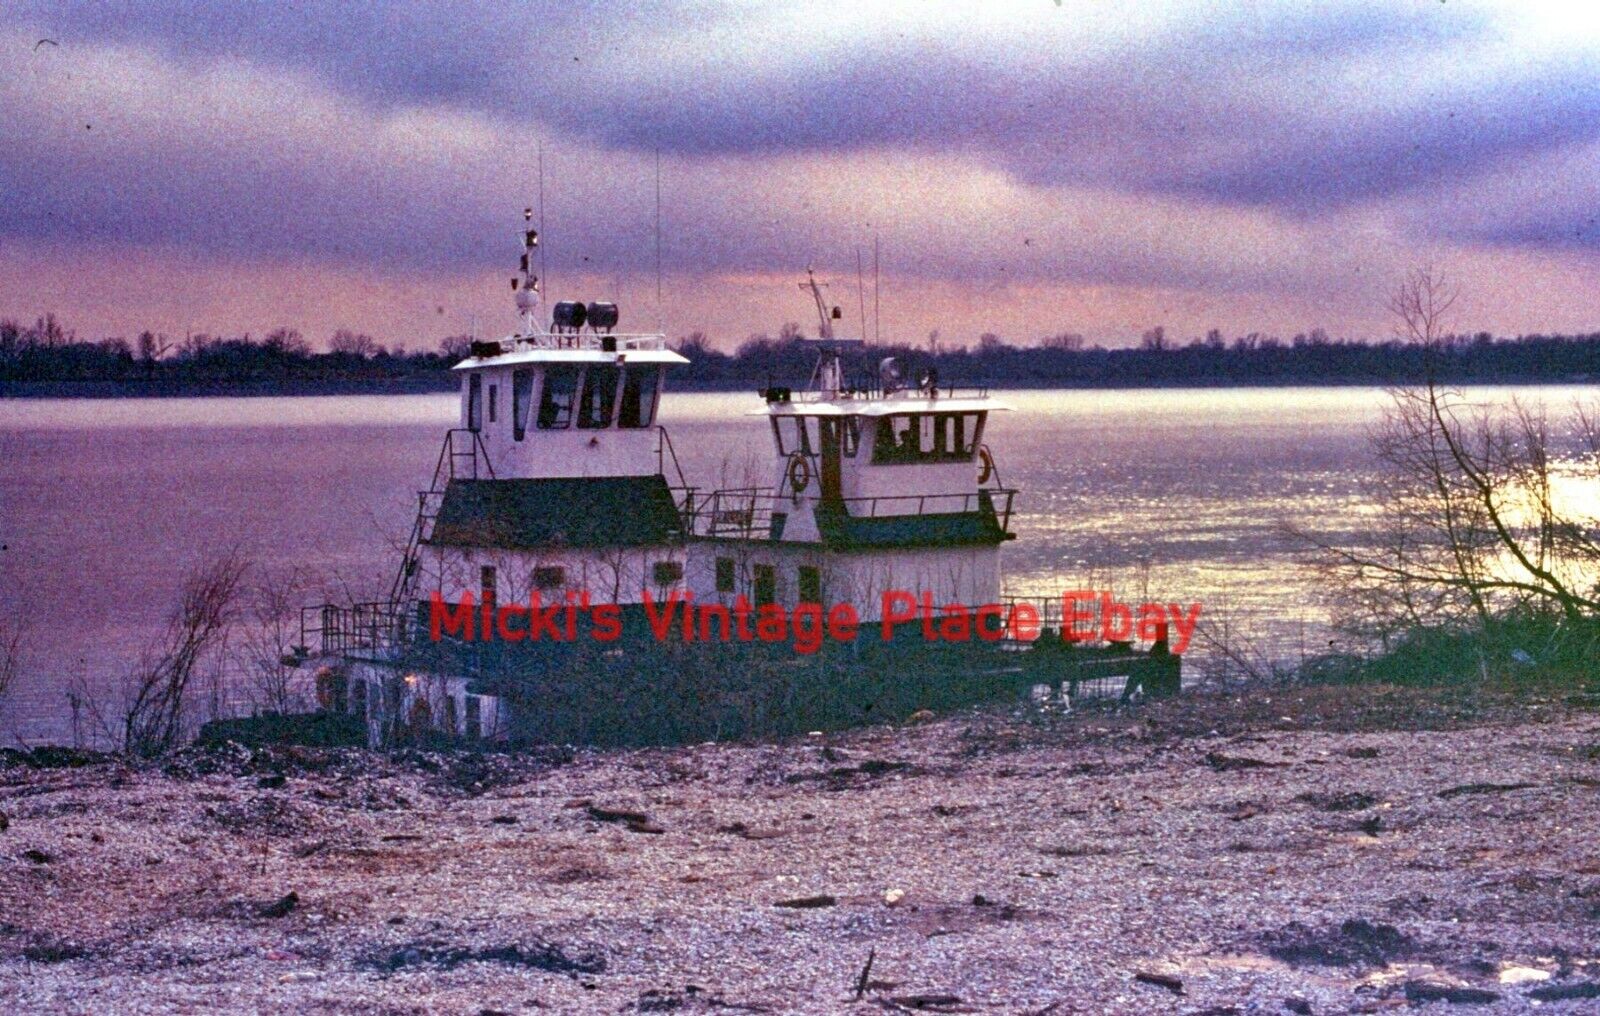 Vtg 1981 Photo 35mm Slide Hawaii Boats Docked at Sunset  j44